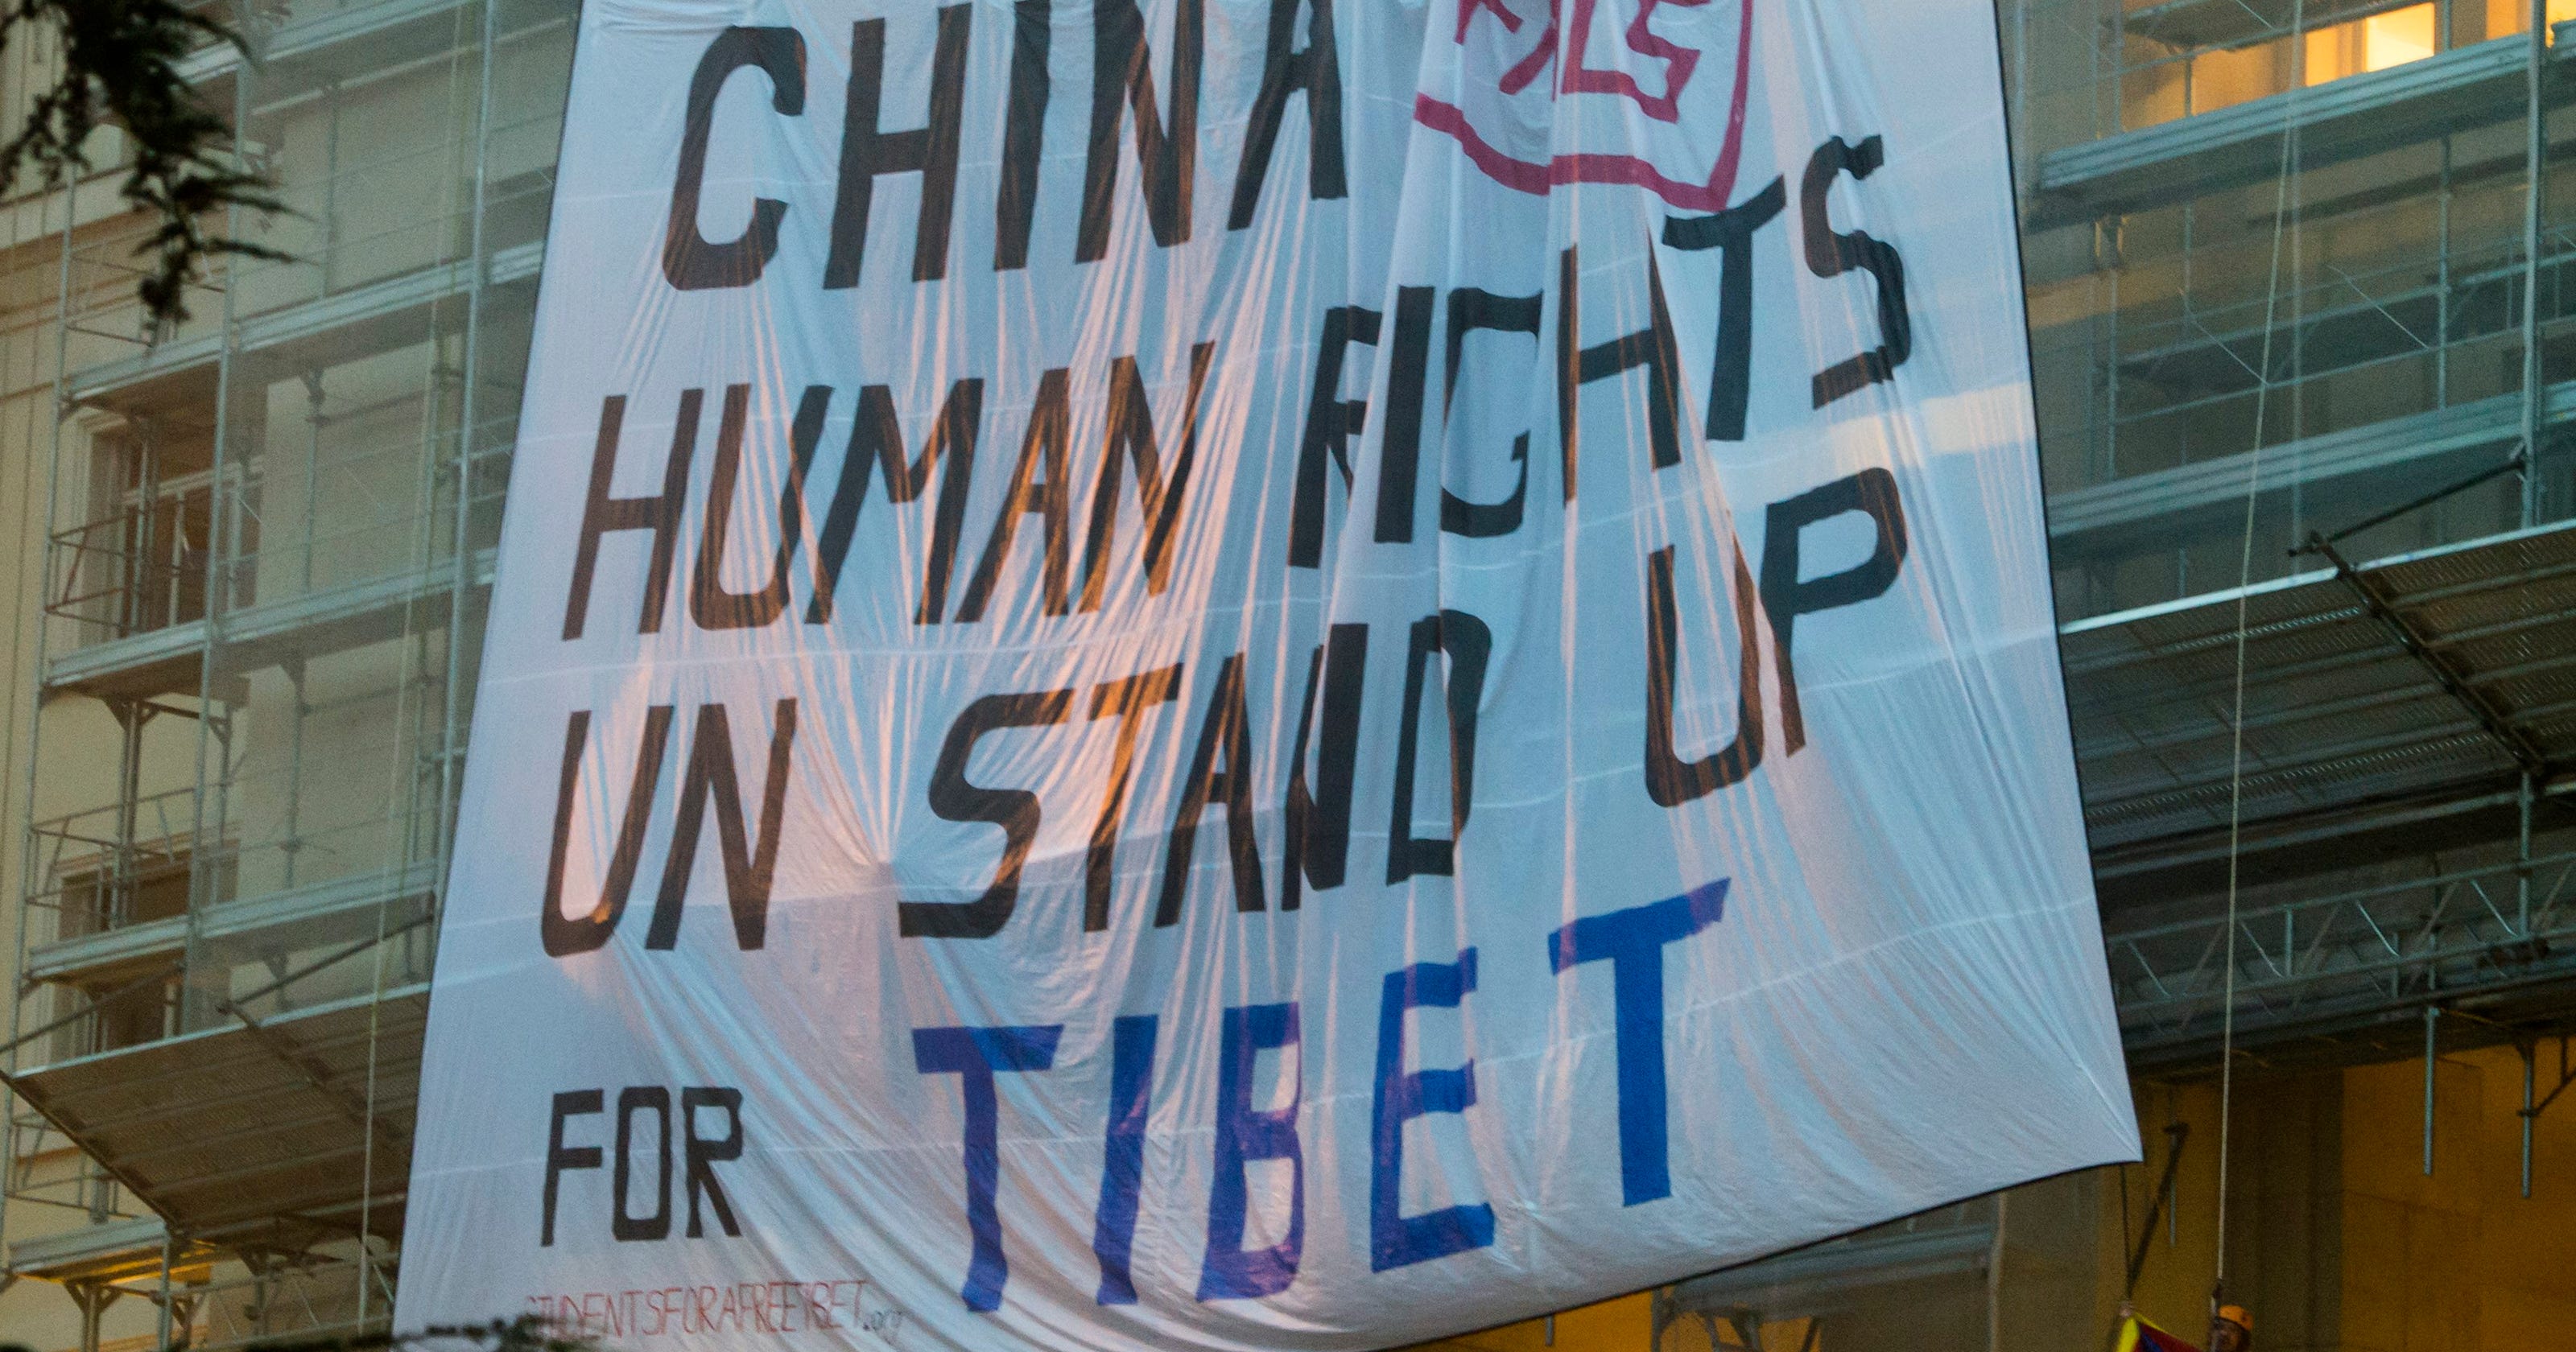 China's human rights record under scrutiny at U.N.